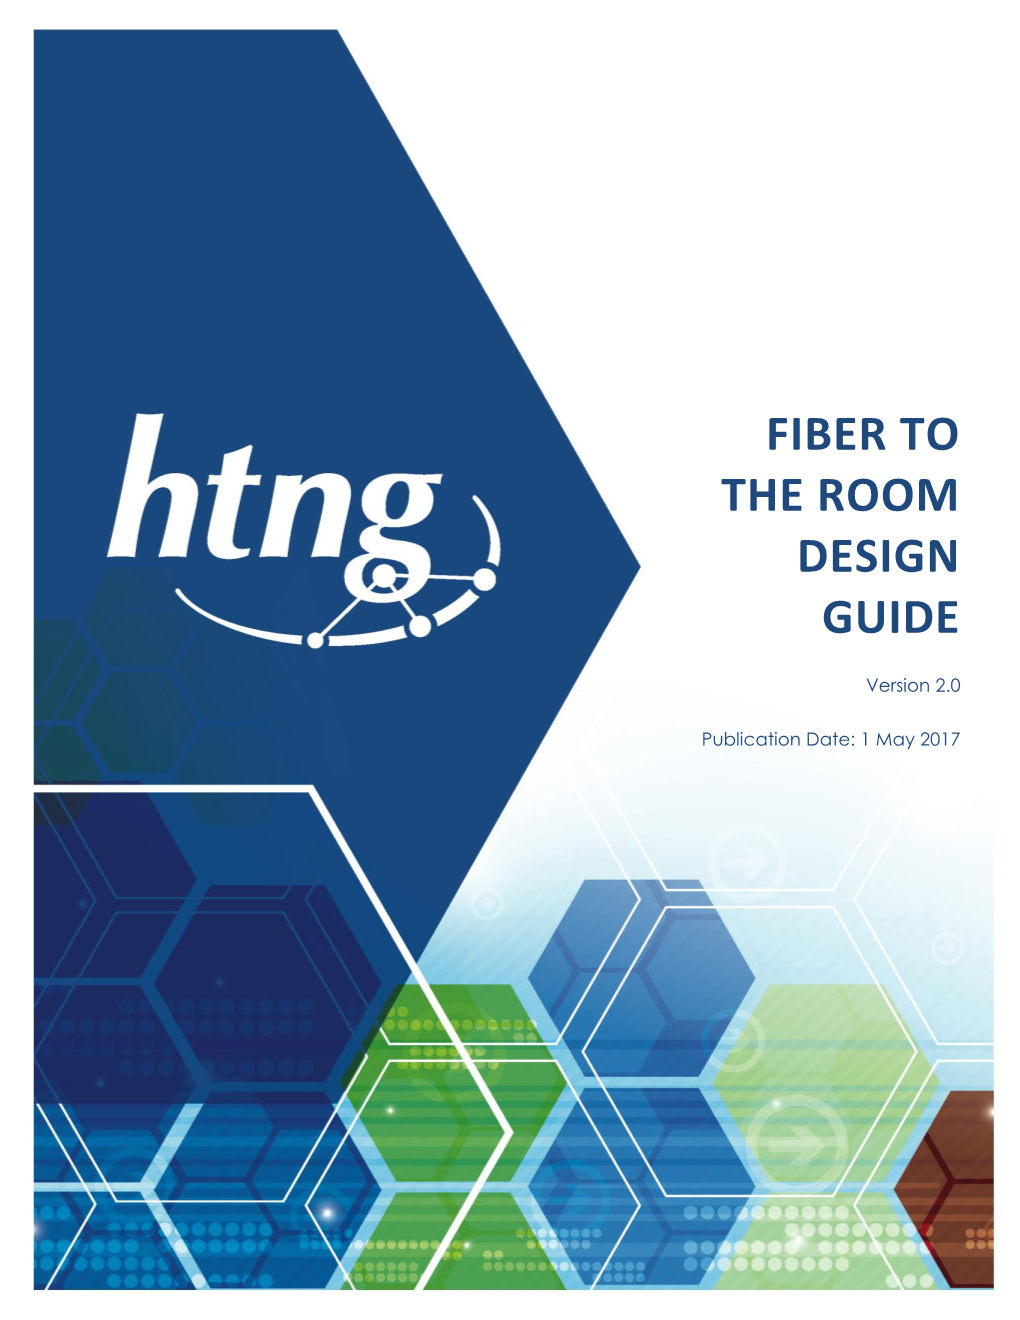 Fiber to the Room Design Guide